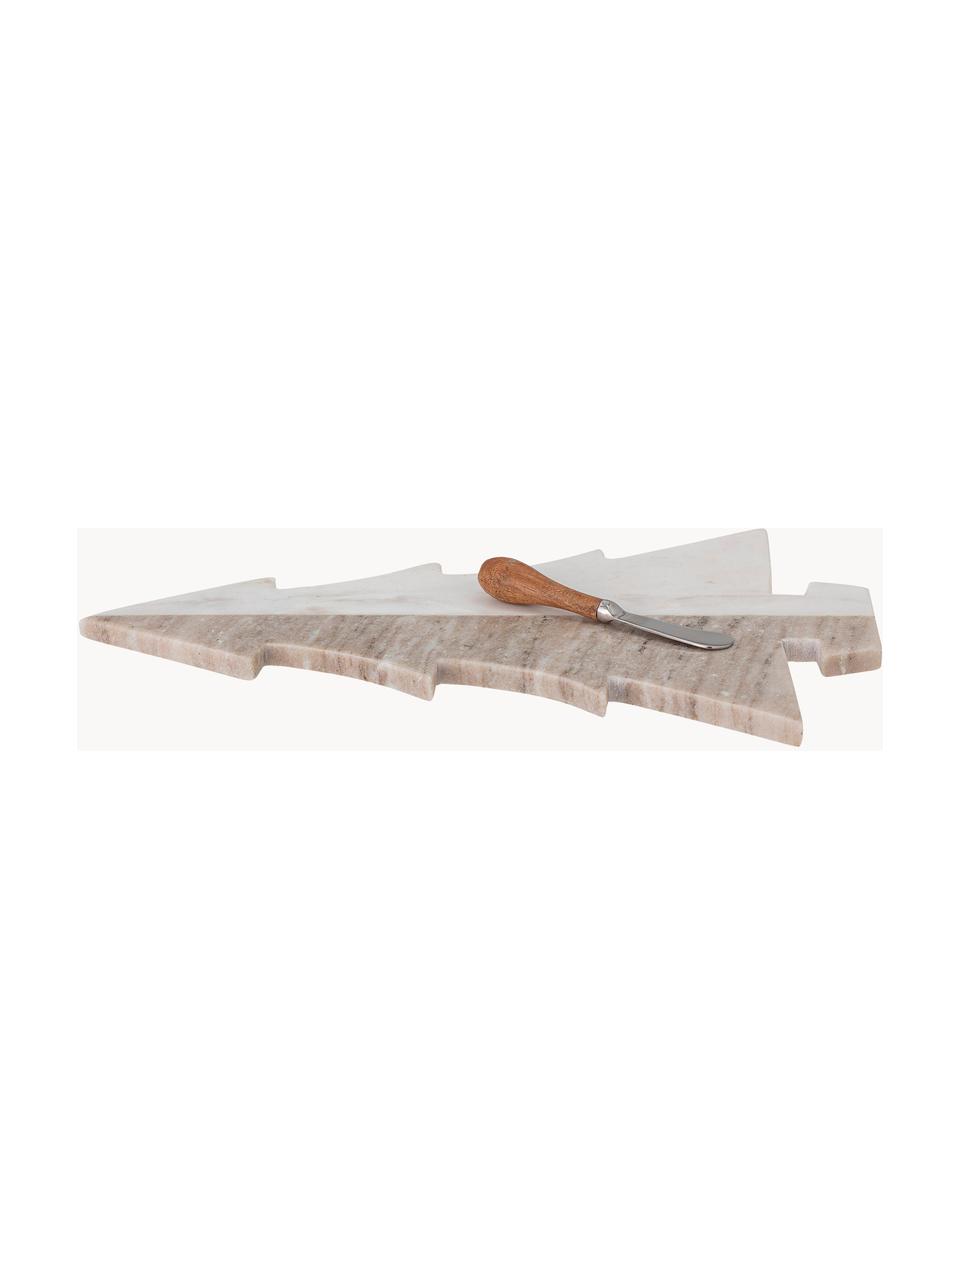 Plat de service en marbre avec couteau Malalai, long. 42 x larg. 28 cm, Marbre, Marbre brun et blanc, Lot de différentes tailles